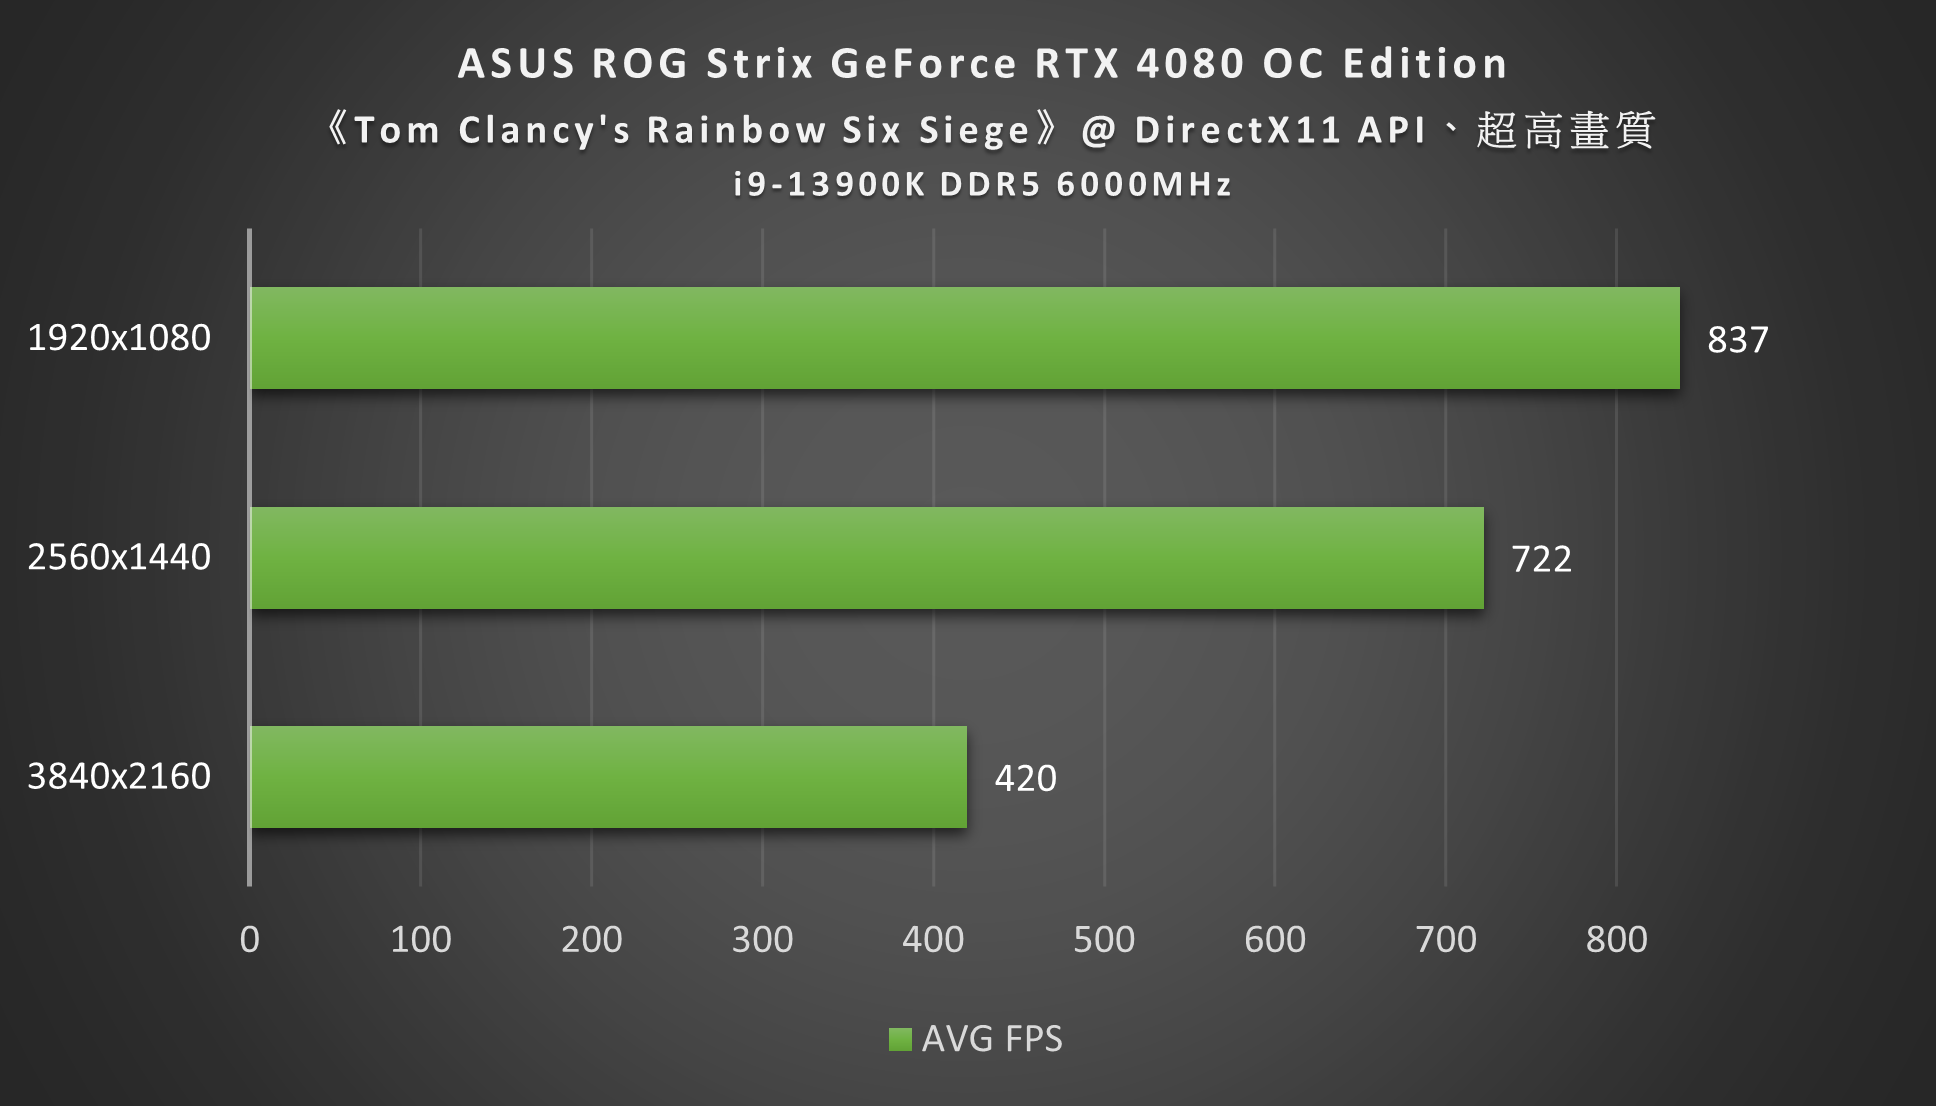 ASUS ROG Strix GeForce RTX 4080